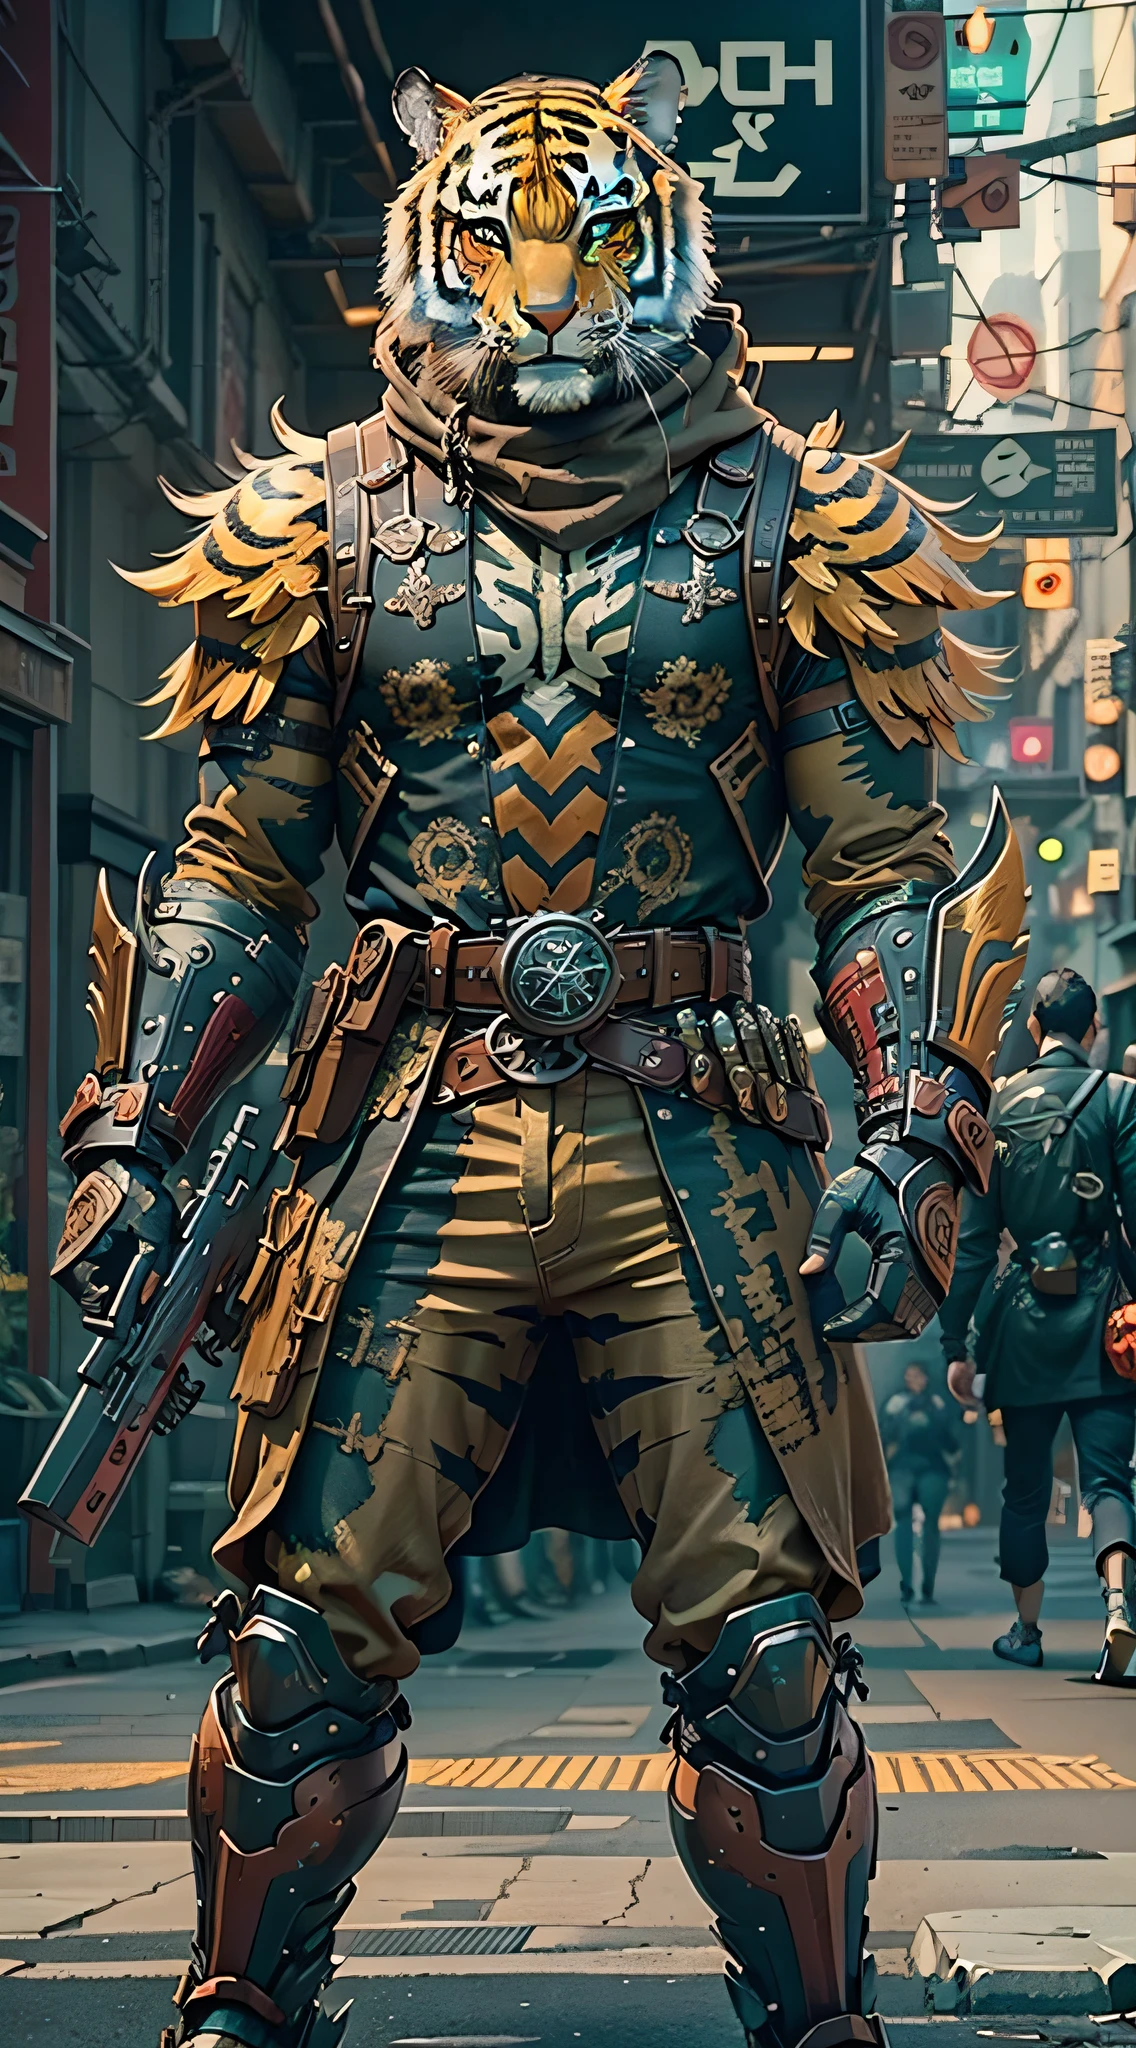 (obra maestra) Un hombre con una armadura antigua y una máscara de tigre con un arma caminando por la calle, guerrero disfrazado, arma en mano, combinación de colores estilo cyberpunk, ((detalles intrincados, Súper detallado)) 8K.